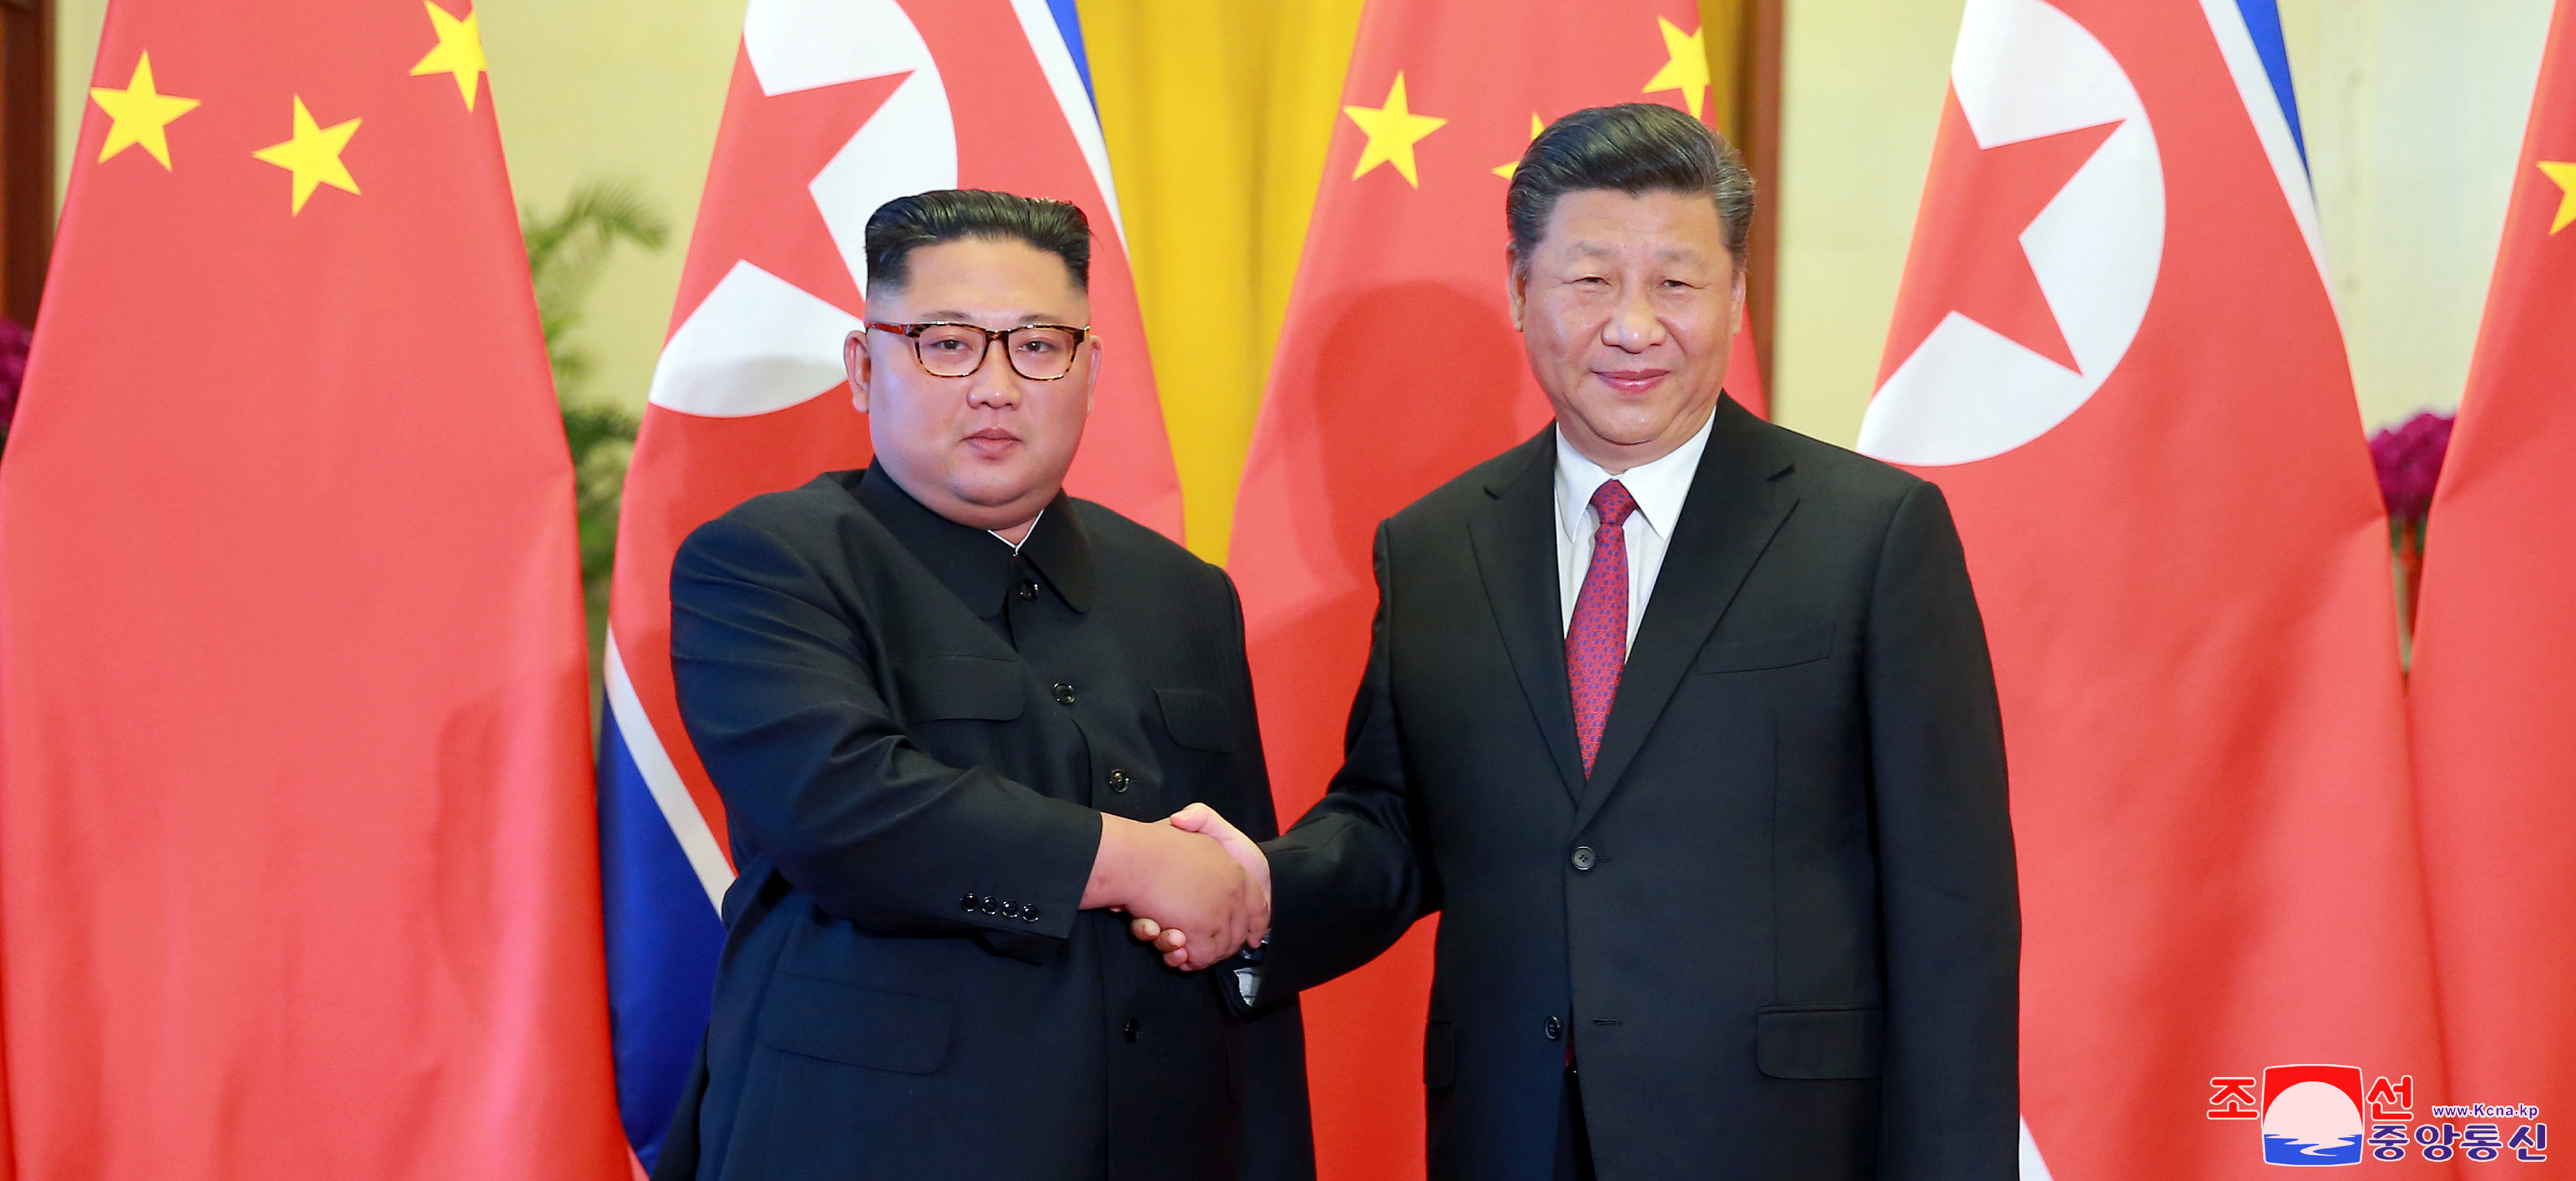 مصافحة زعيم كوريا الشمالية والرئيس الصينى